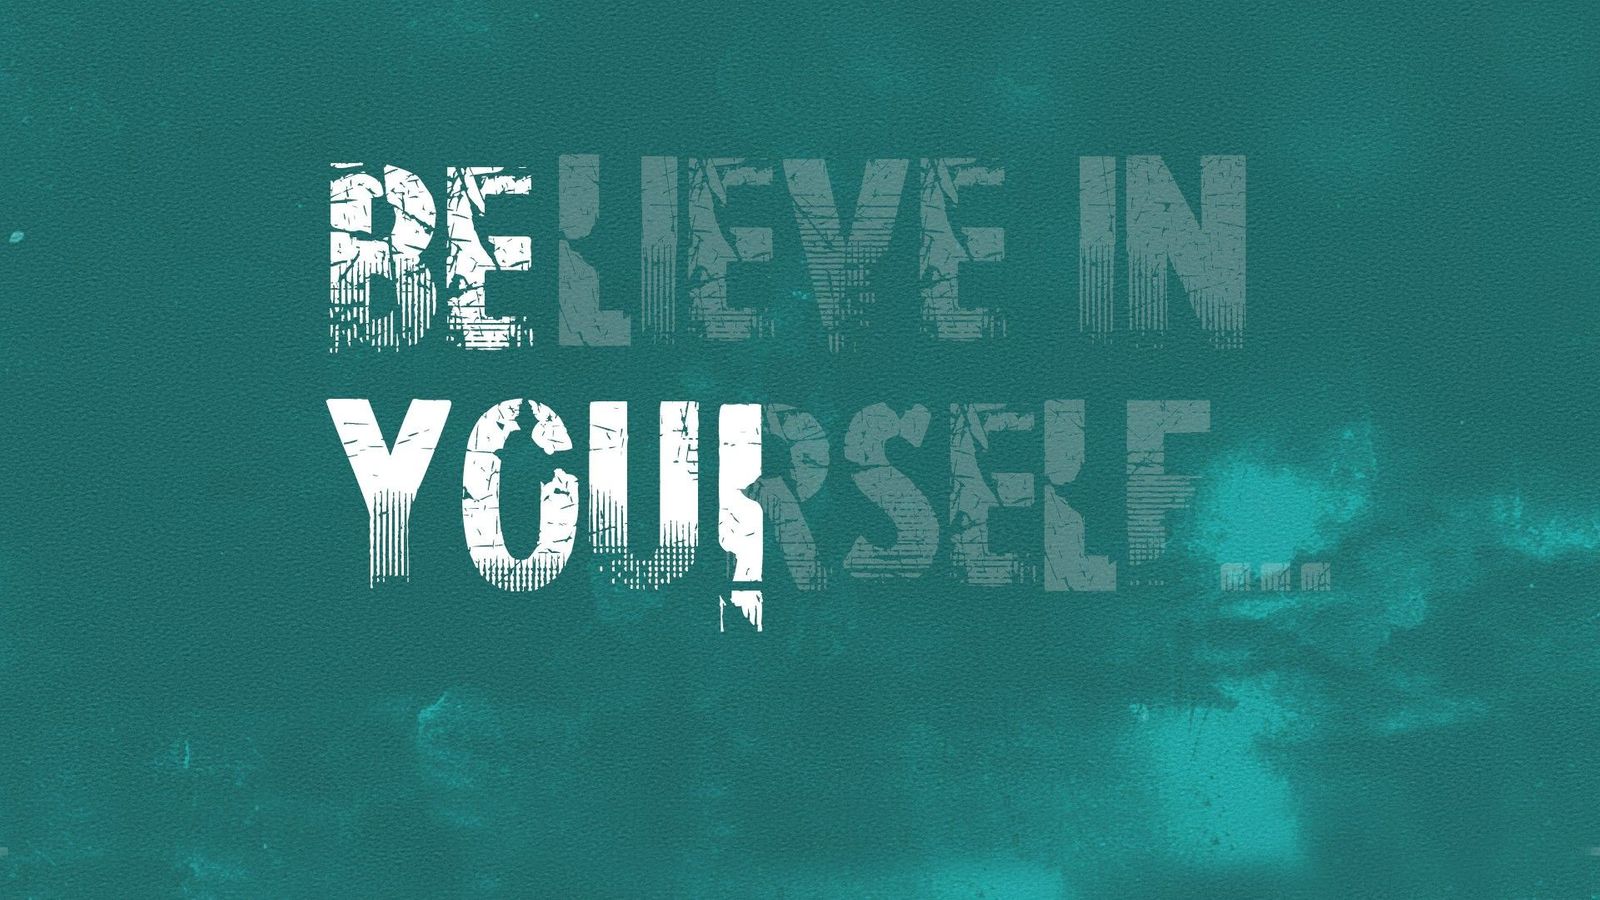 believe yourself